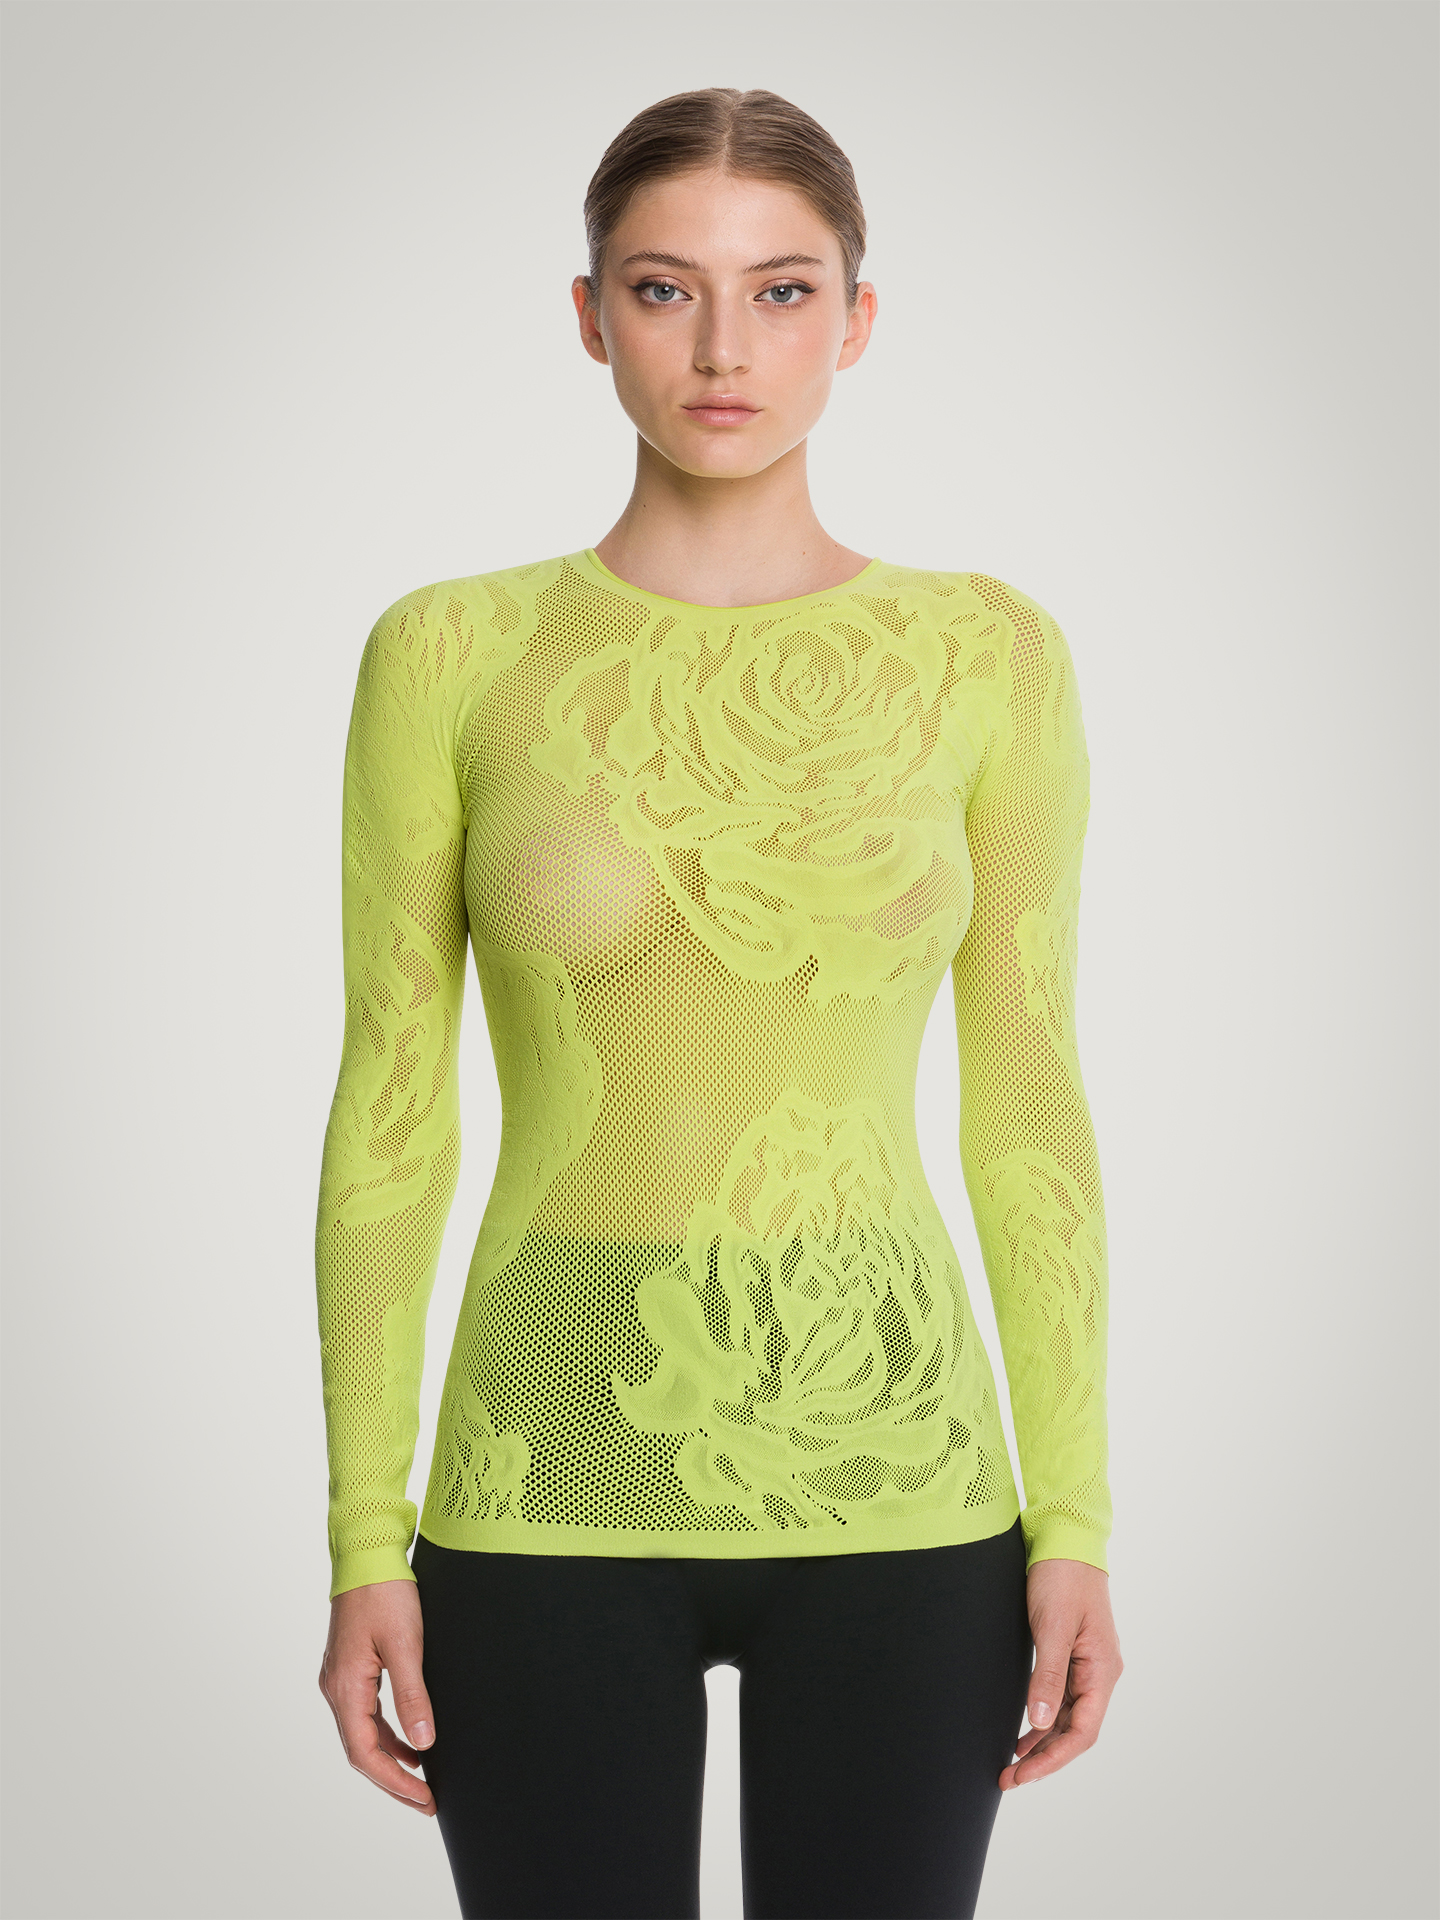 Wolford - Net Roses Top Long Sleeves, Frau, paradise green, Größe: S günstig online kaufen